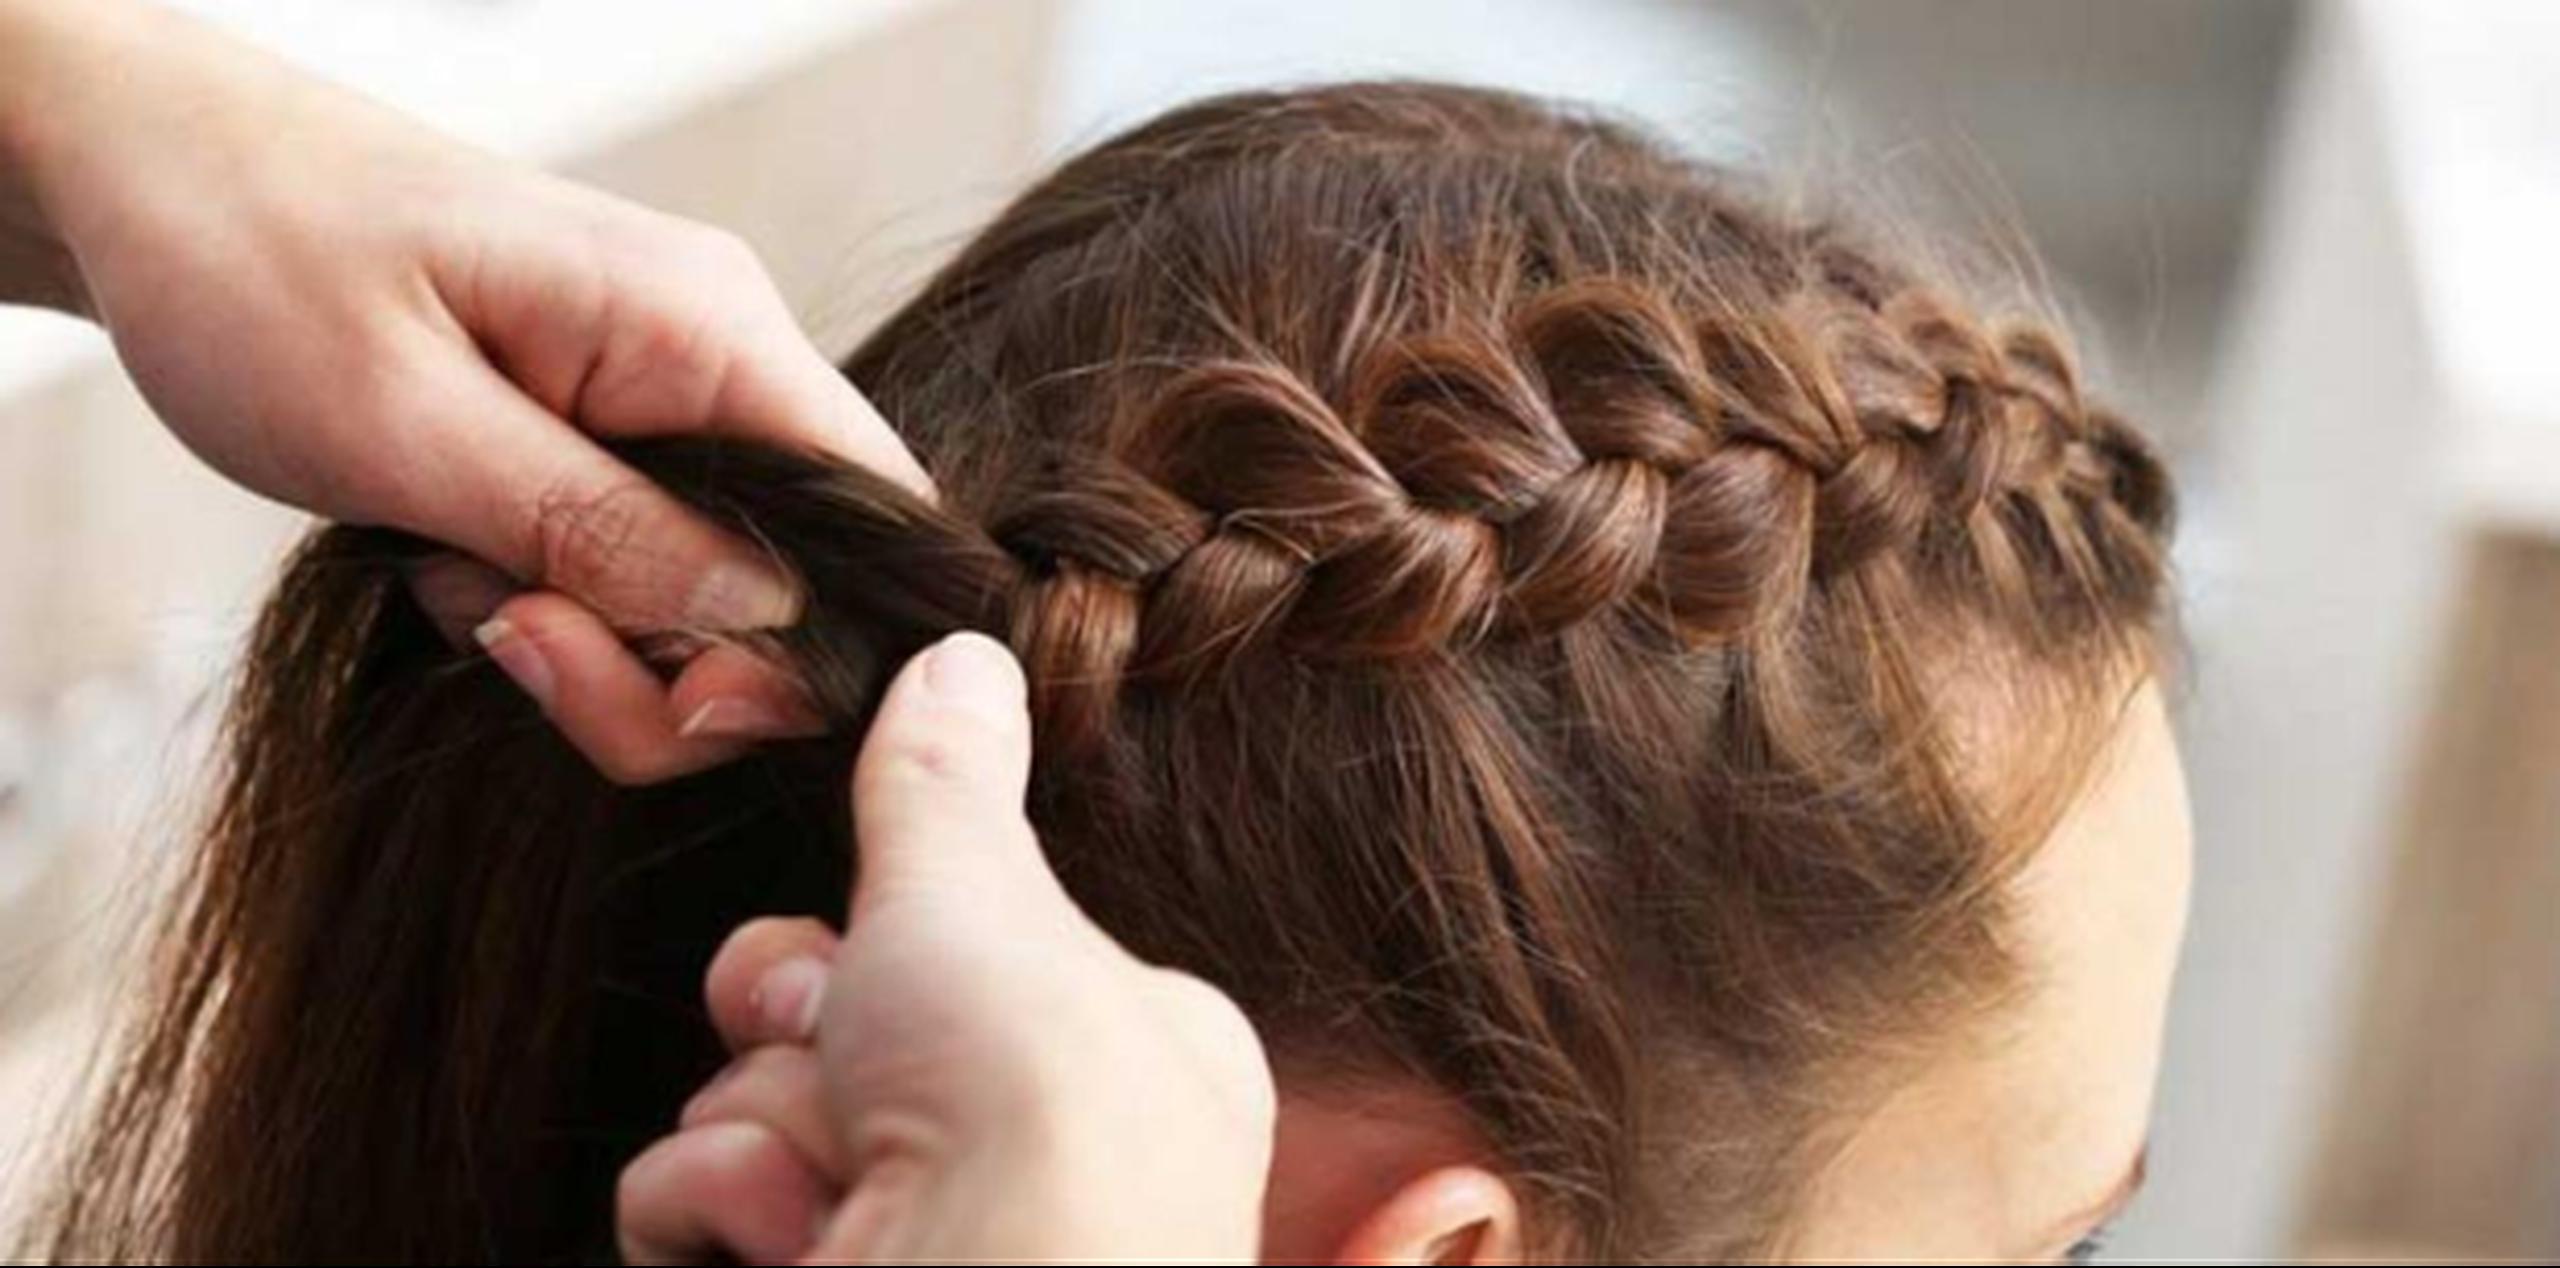 La tracción del pelo por el uso de trenzas debilita y atrofia la raíz capilar de manera irreversible. (Shutterstock)